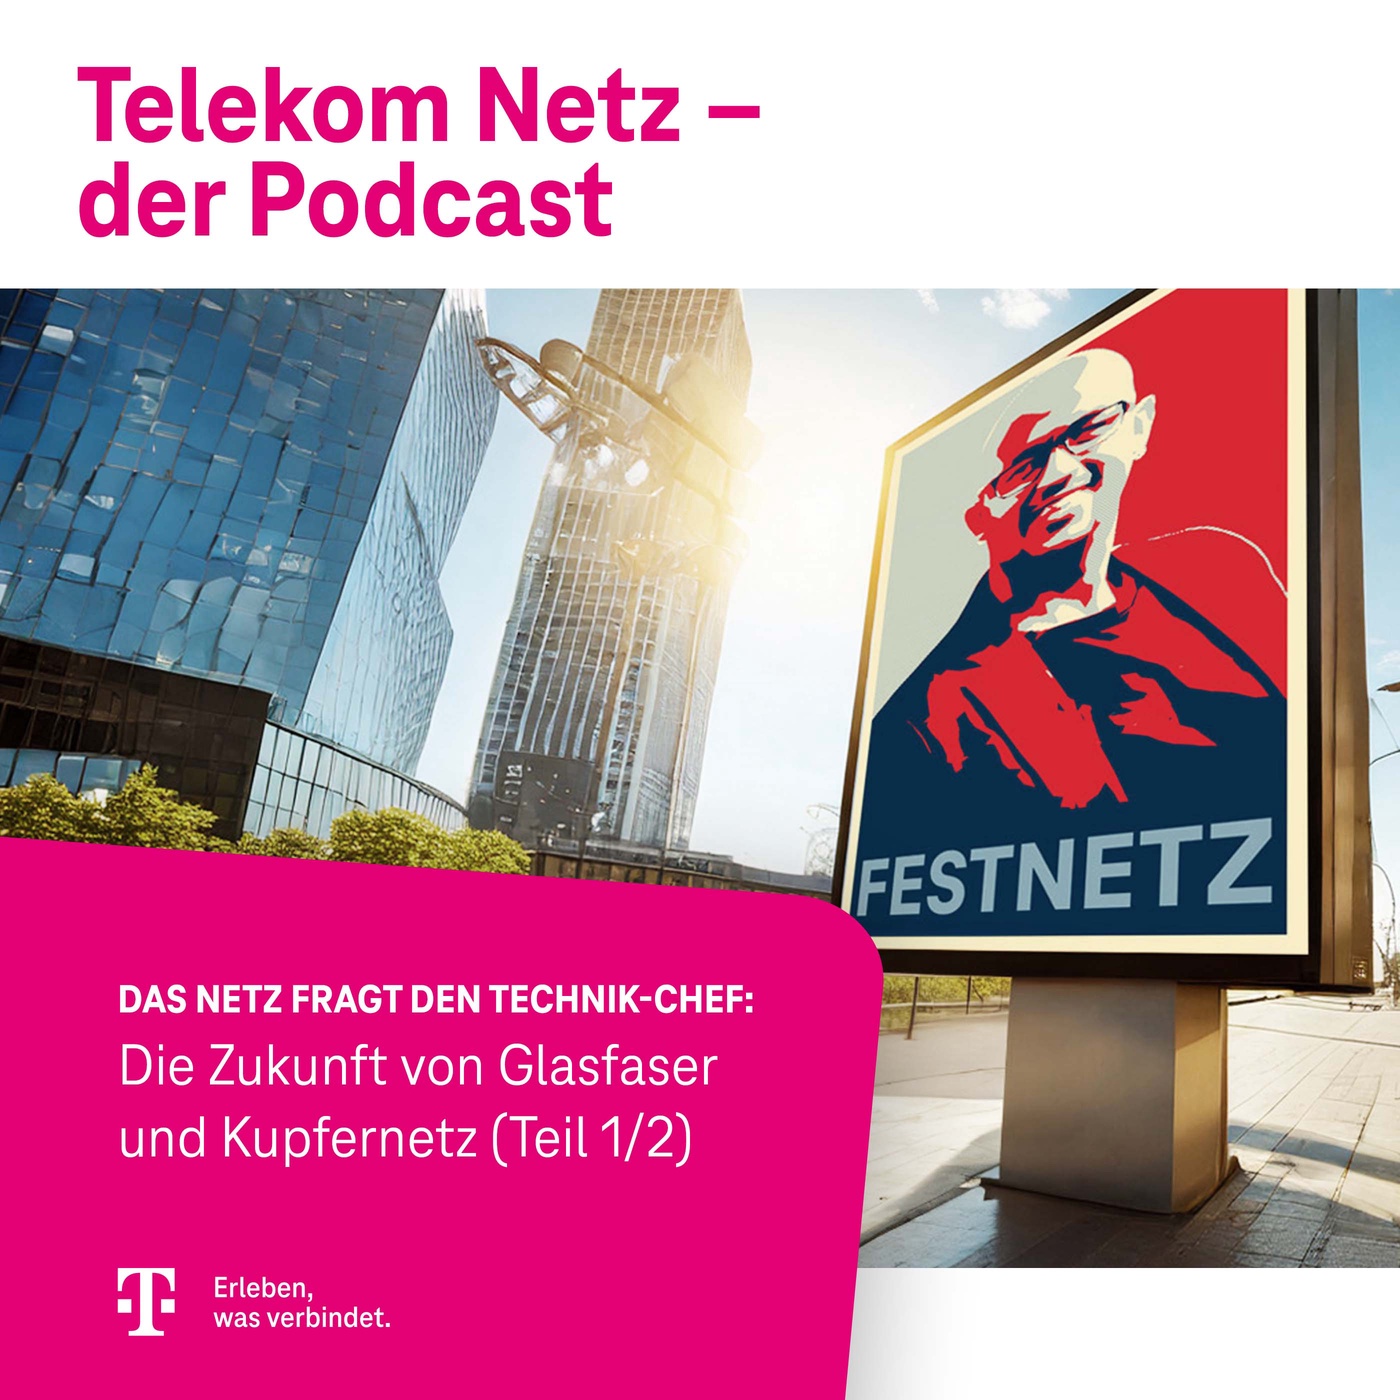 Episode 167 – Das Netz fragt den Technik-Chef, Teil 1